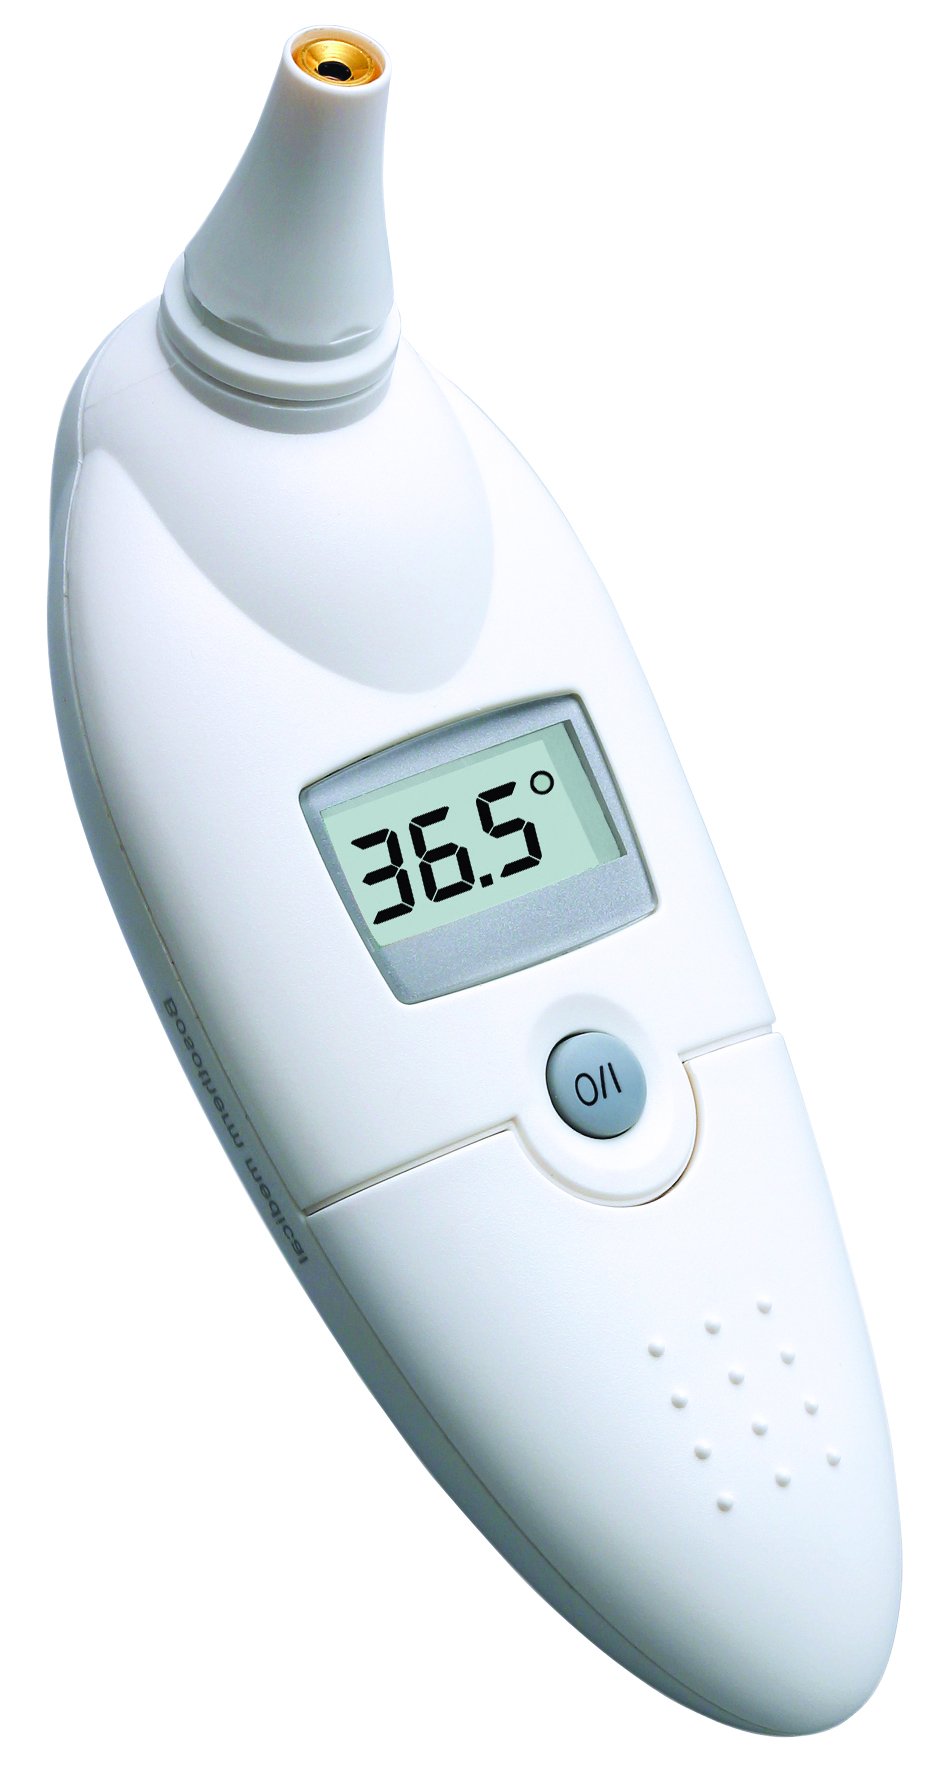 boso bosotherm medical – Digitales Infrarot-Fieberthermometer zur Körpertemperatur-Messung im Ohr mit Leucht-Display und Speicher für die letzte Messung – Inkl. Hygiene-Schutzhüllen